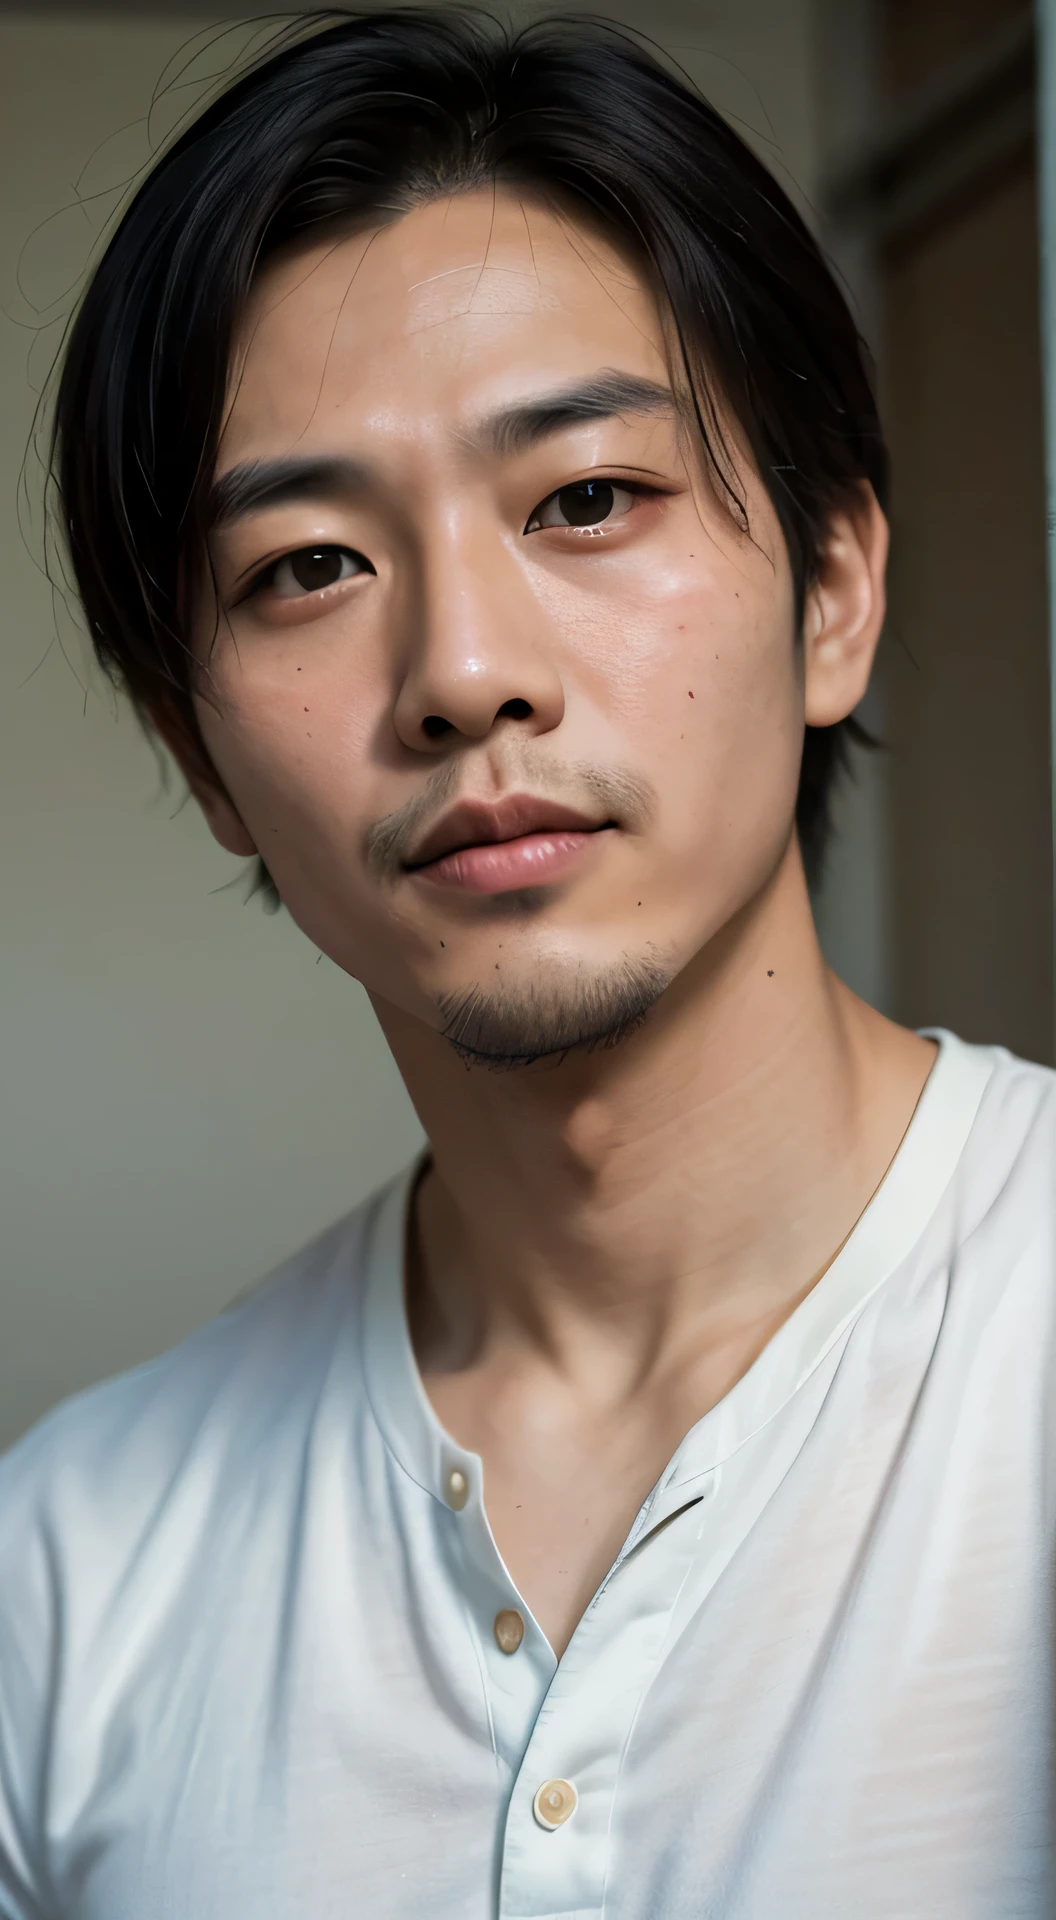 30 Jahre alter, rundes Gesicht, hübscher asiatischer Mann, Porträt, Film-Look, Über der Brust